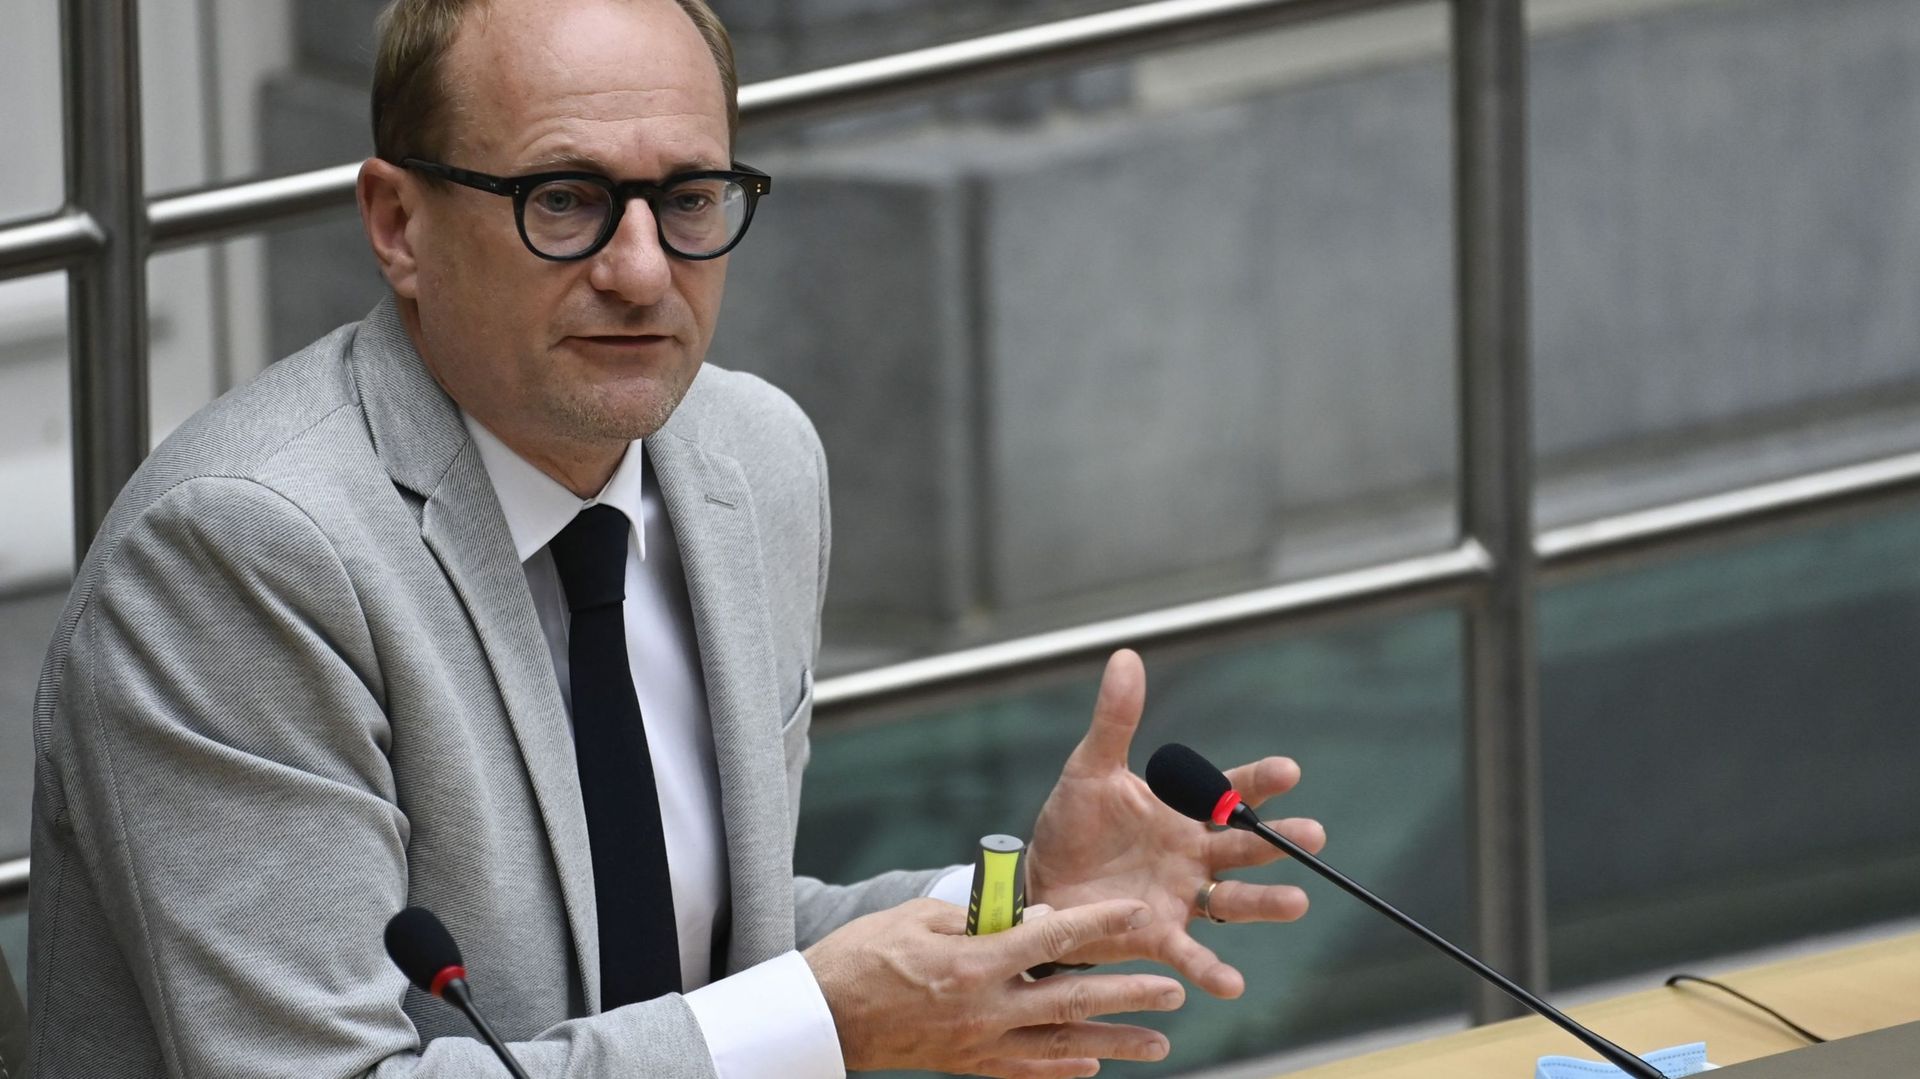 Le ministre NVA Ben Weyts est critiqué par le SPA et Groen pour sa maintenue du code jaune dans les écoles flamandes